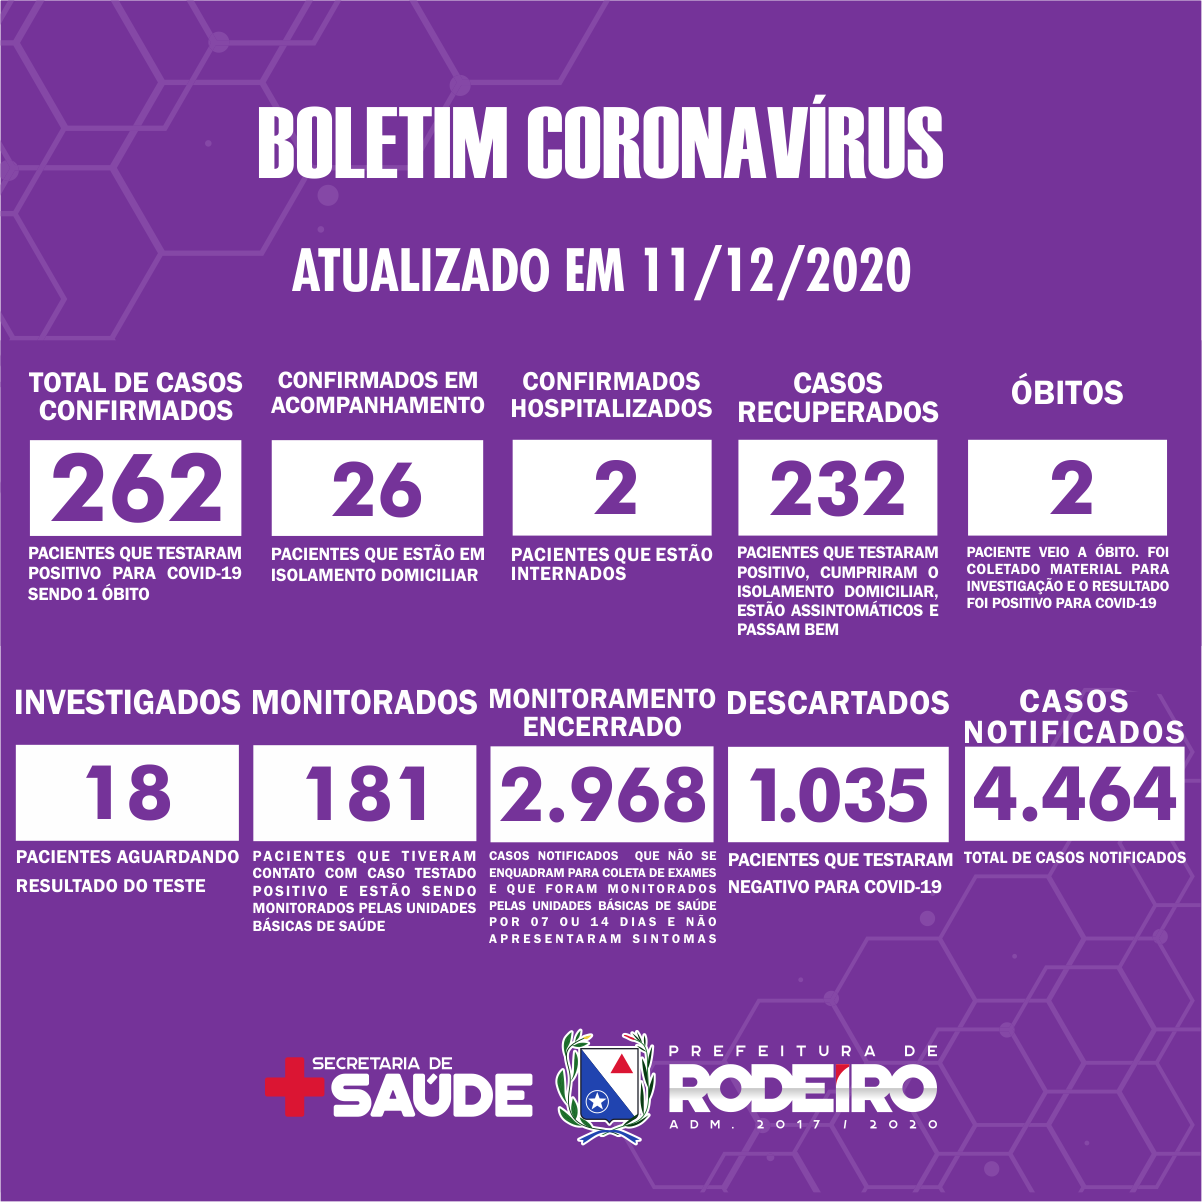 Boletim Epidemiológico do Município de Rodeiro sobre coronavírus, atualizado em 11/12/2020.